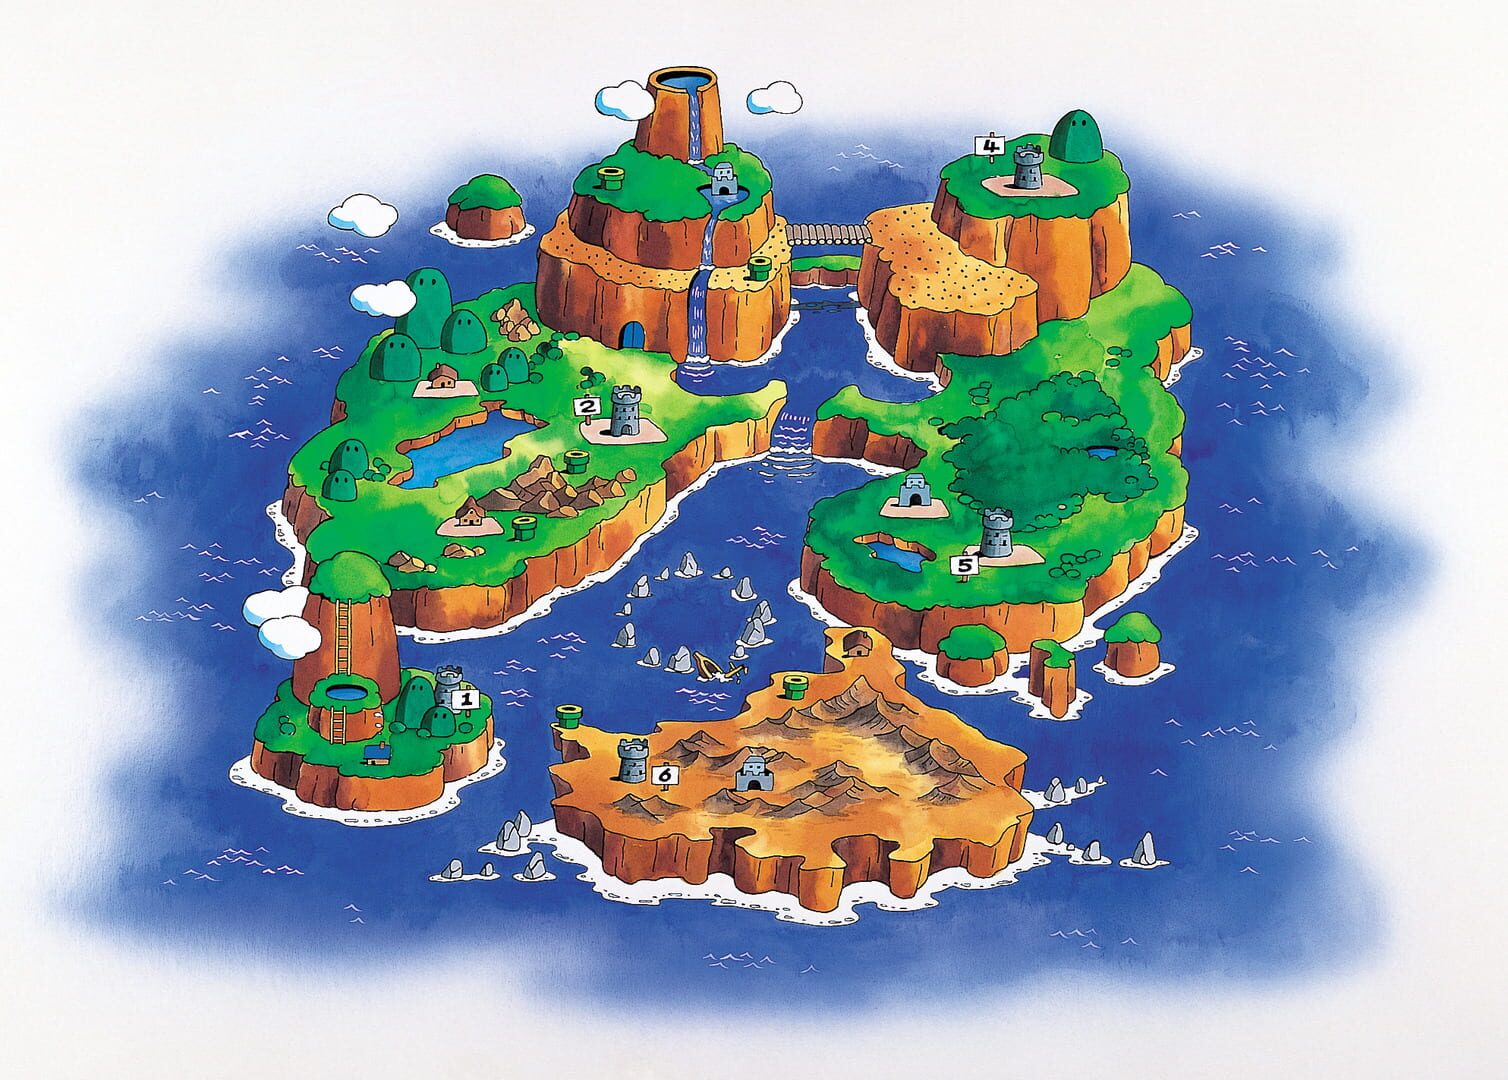 Arte - Super Mario World